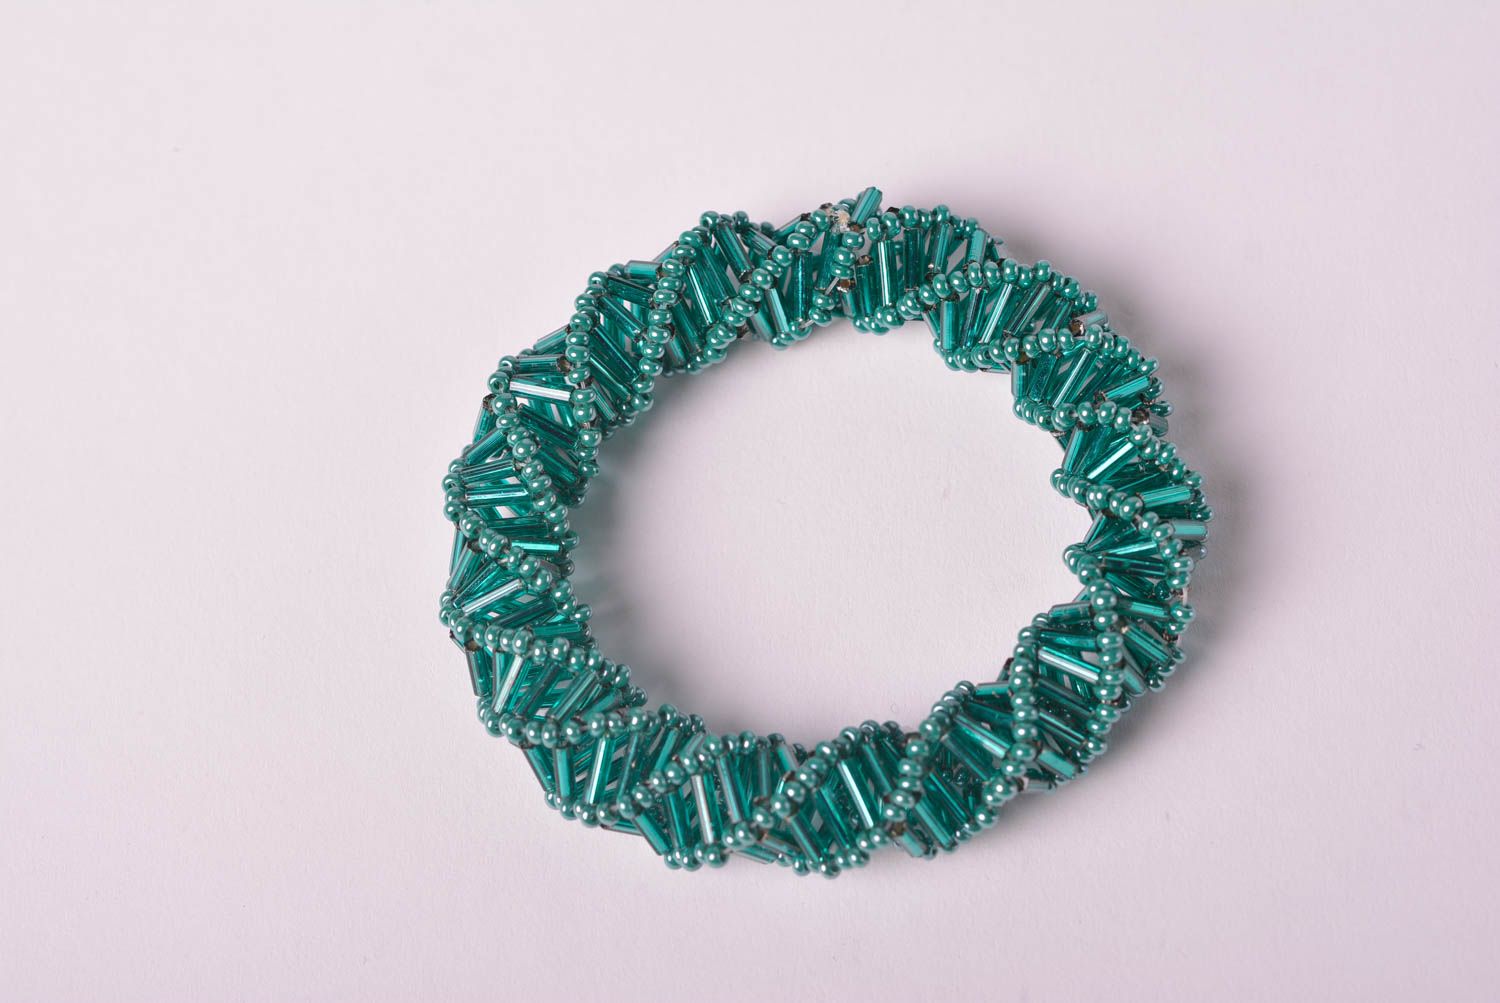 Браслет из бисера хэнд мэйд модный браслет зеленый стильное украшение из бисера фото 3